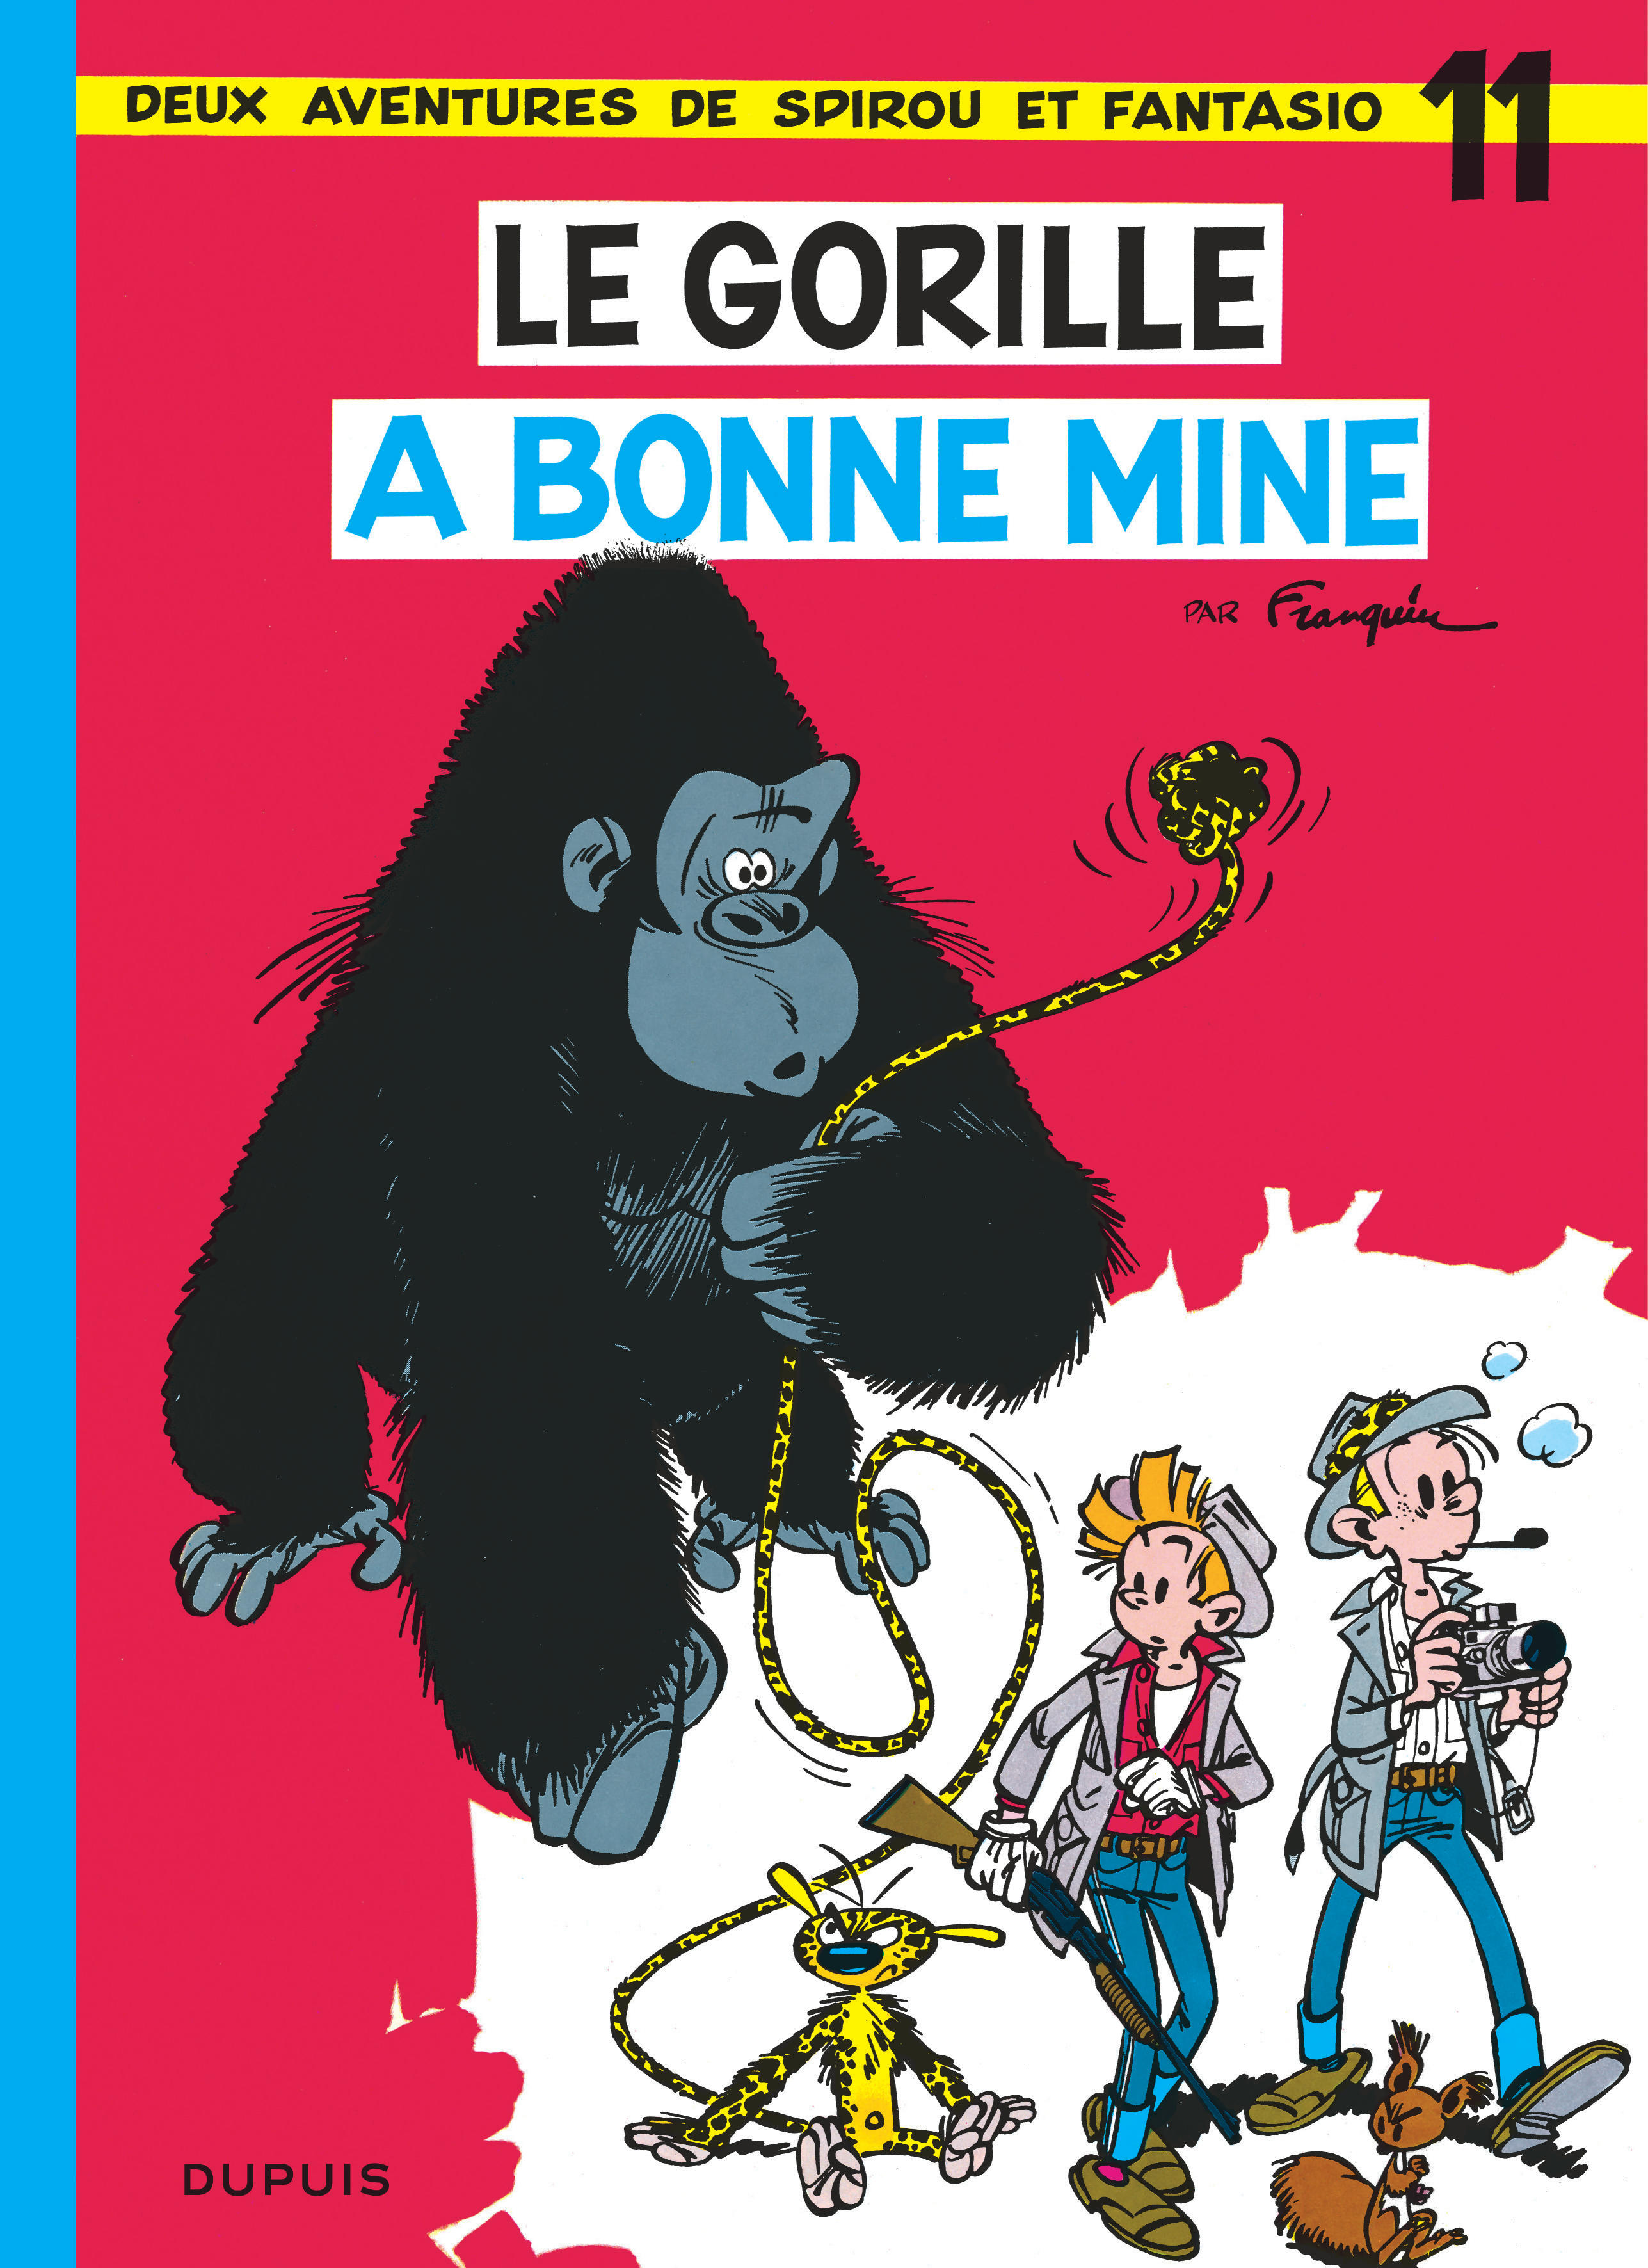 Spirou et Fantasio – Tome 11 – Le Gorille a bonne mine - couv